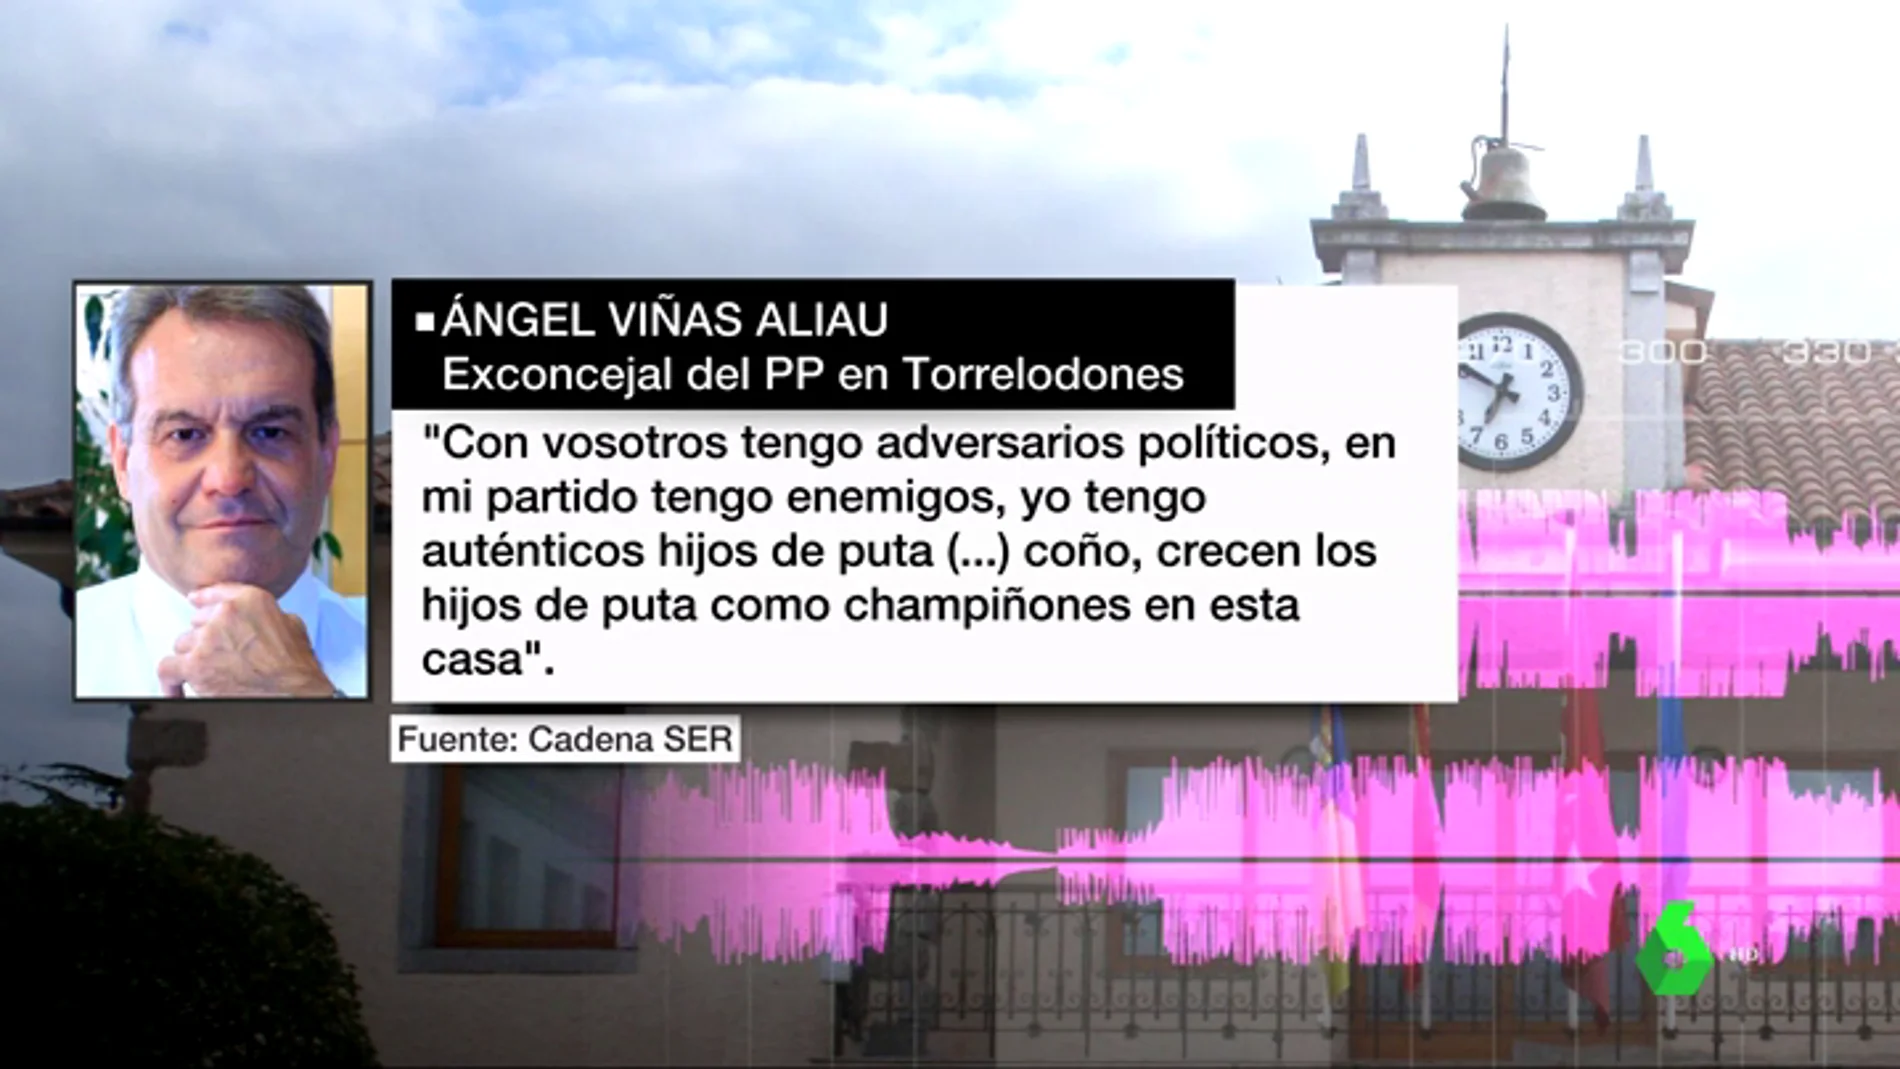 Palabras de Ángel Viñas Aliau, exconcejal del PP en Torrelodones